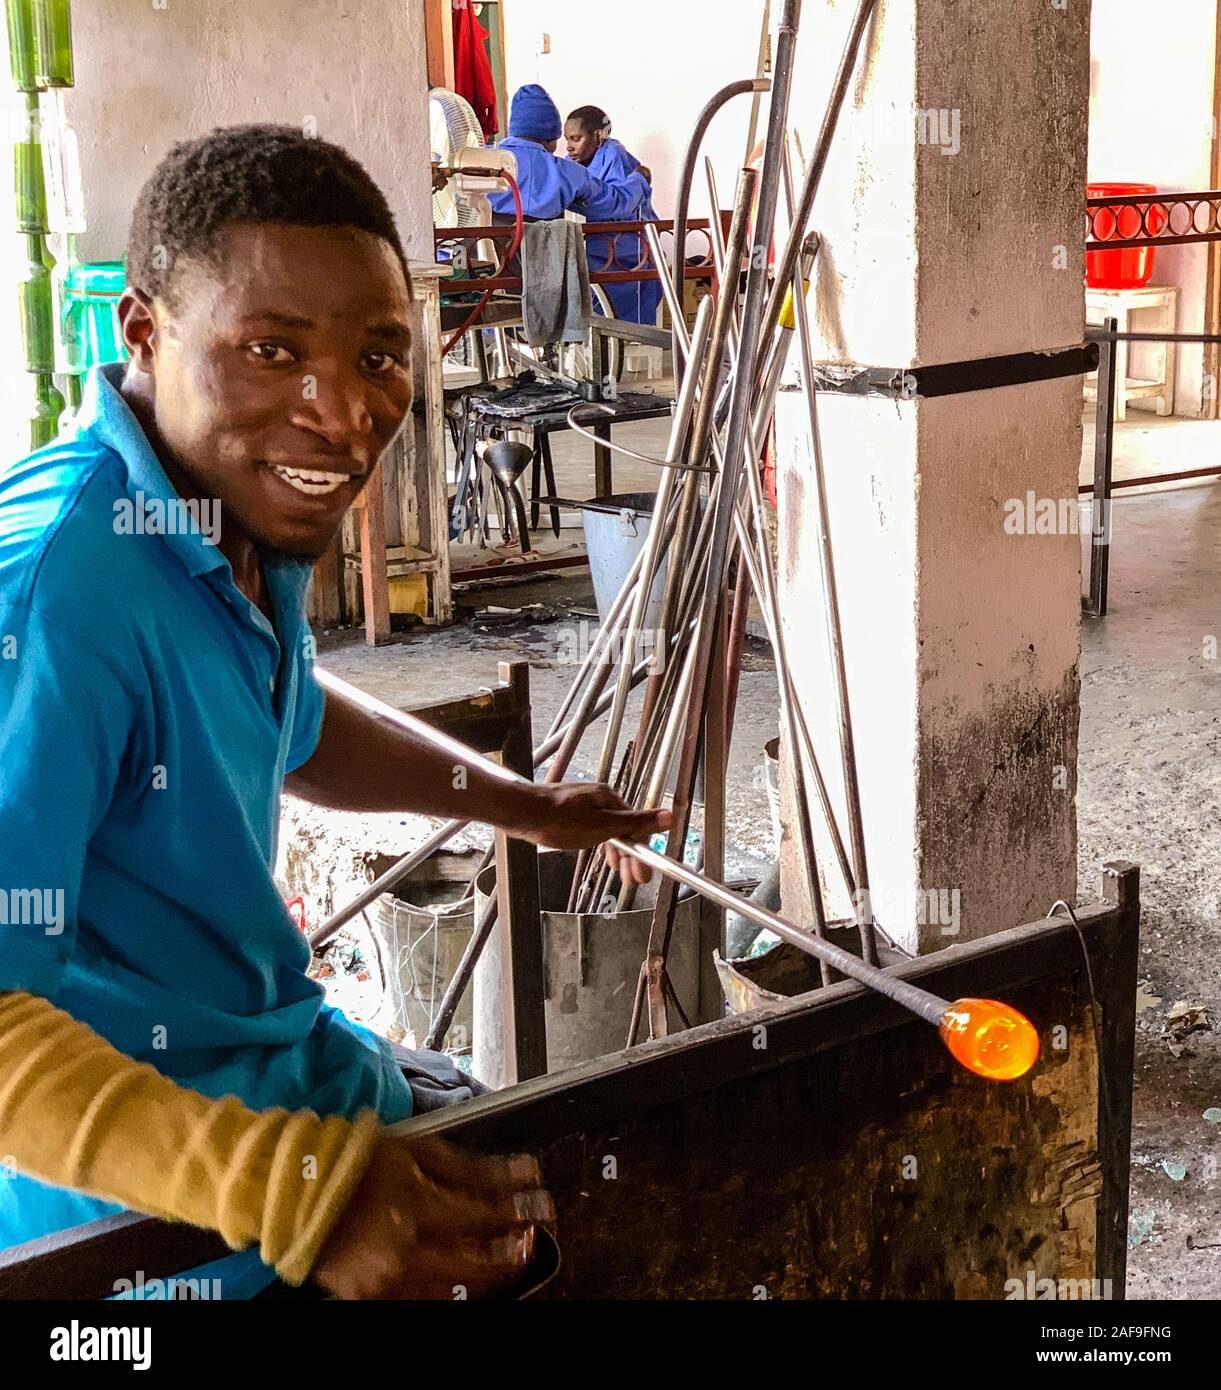 Tanzania. Arusha. Lavoratore disabile di sagomatura del vetro fuso per vetreria a Shanga, un centro artigianale che impiega i portatori di handicap. Foto Stock